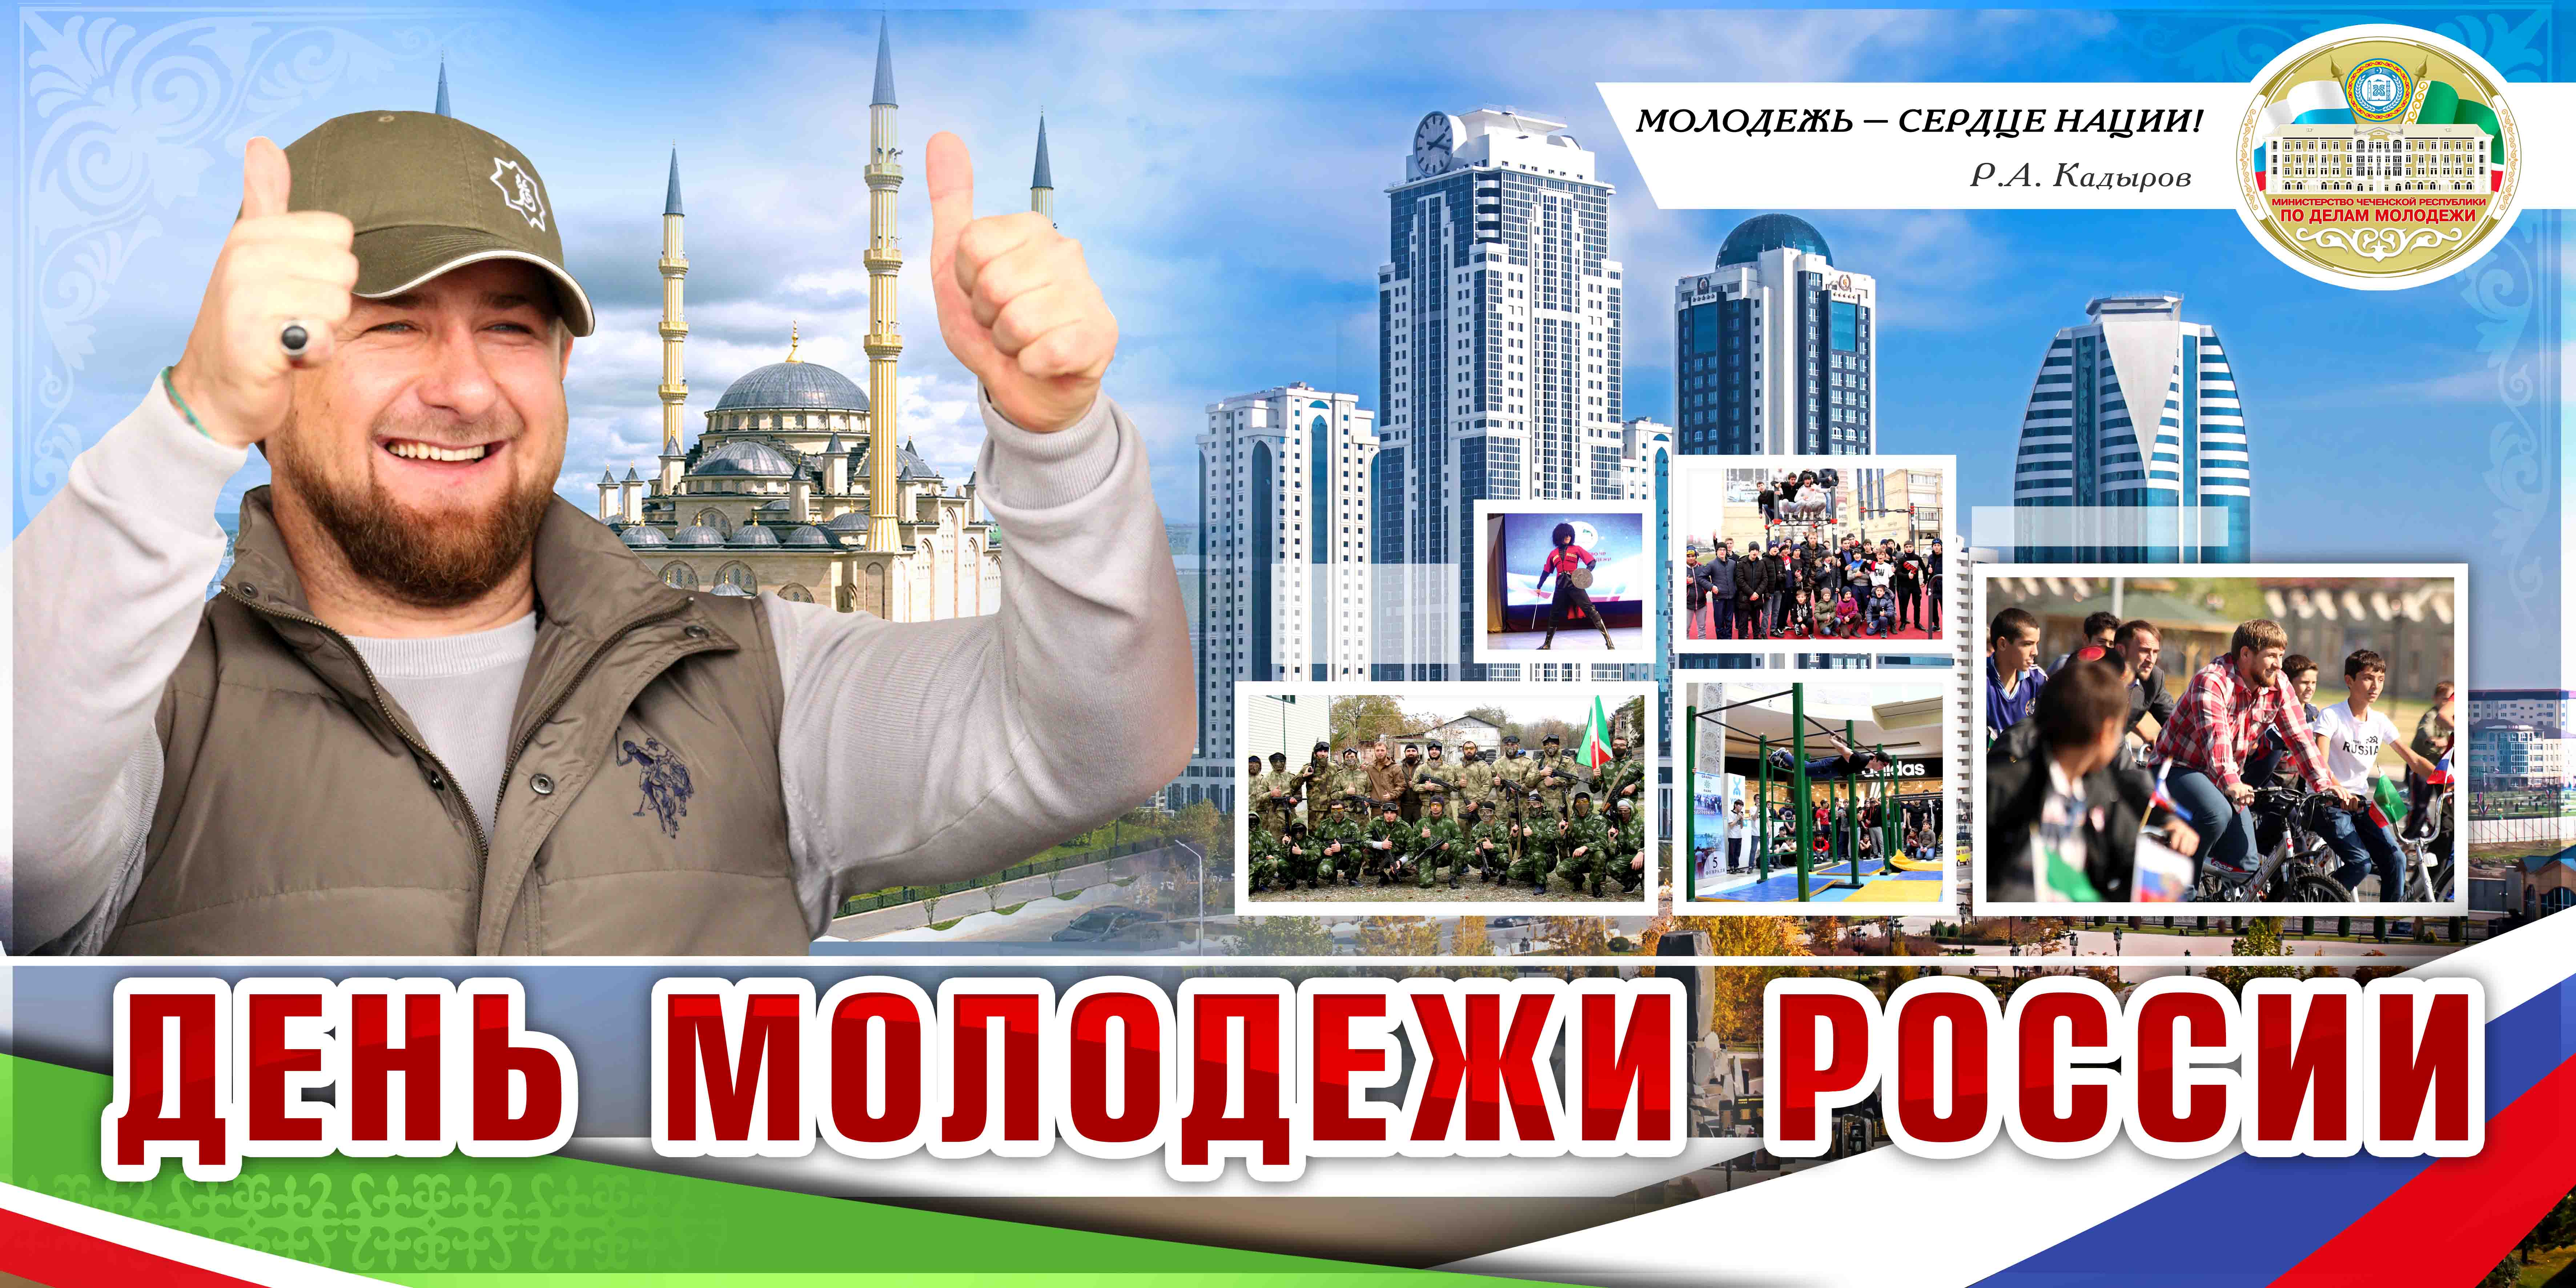 Выходные в чеченской республике. День молодежи в Грозном. День Чеченской молодежи. День молодежи Чеченской Республики. Молодежь Чеченской Республики.